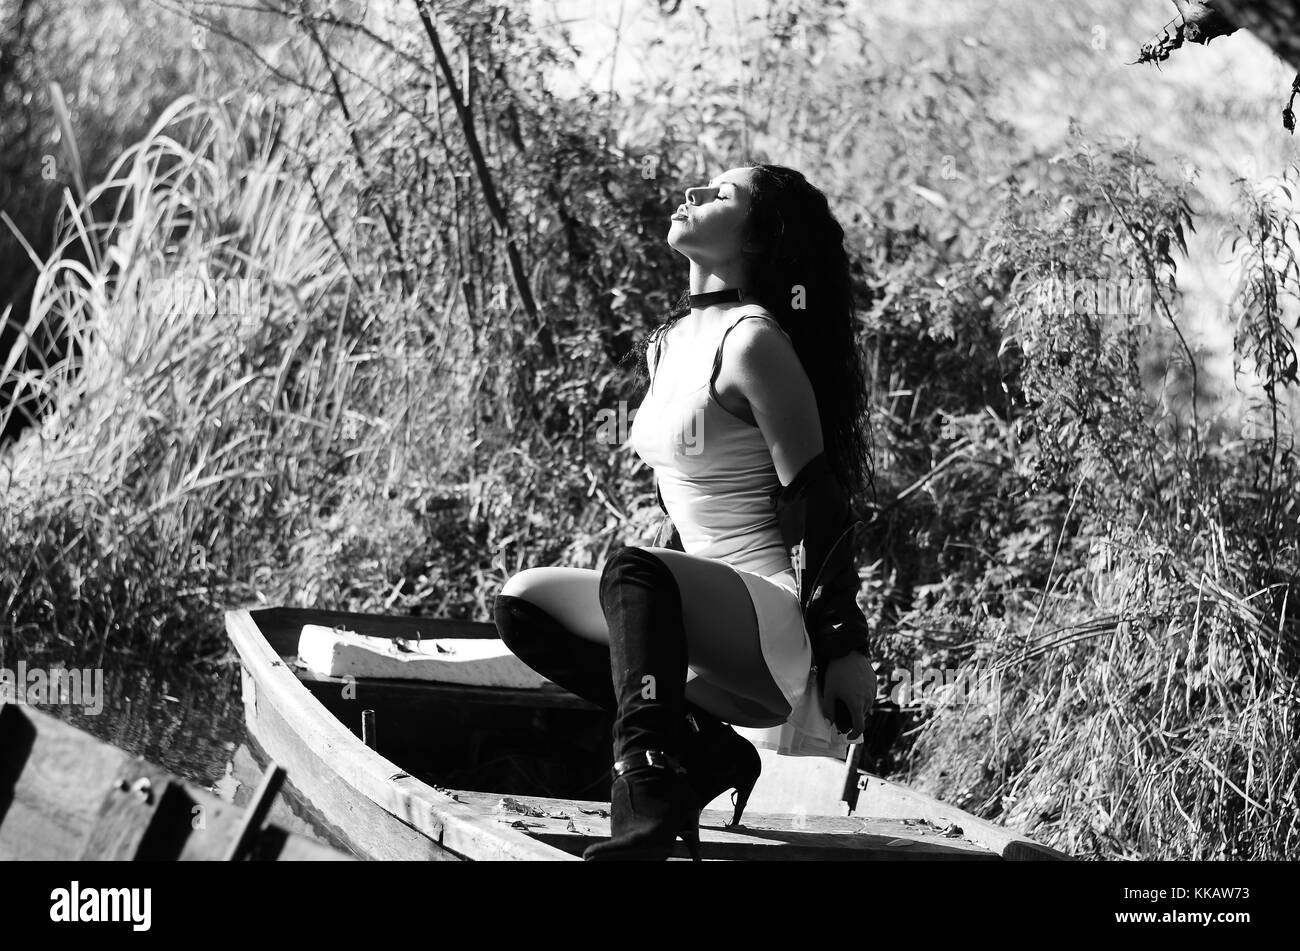 Junge Mädchen liegt in einem Boot auf dem See Stockfoto